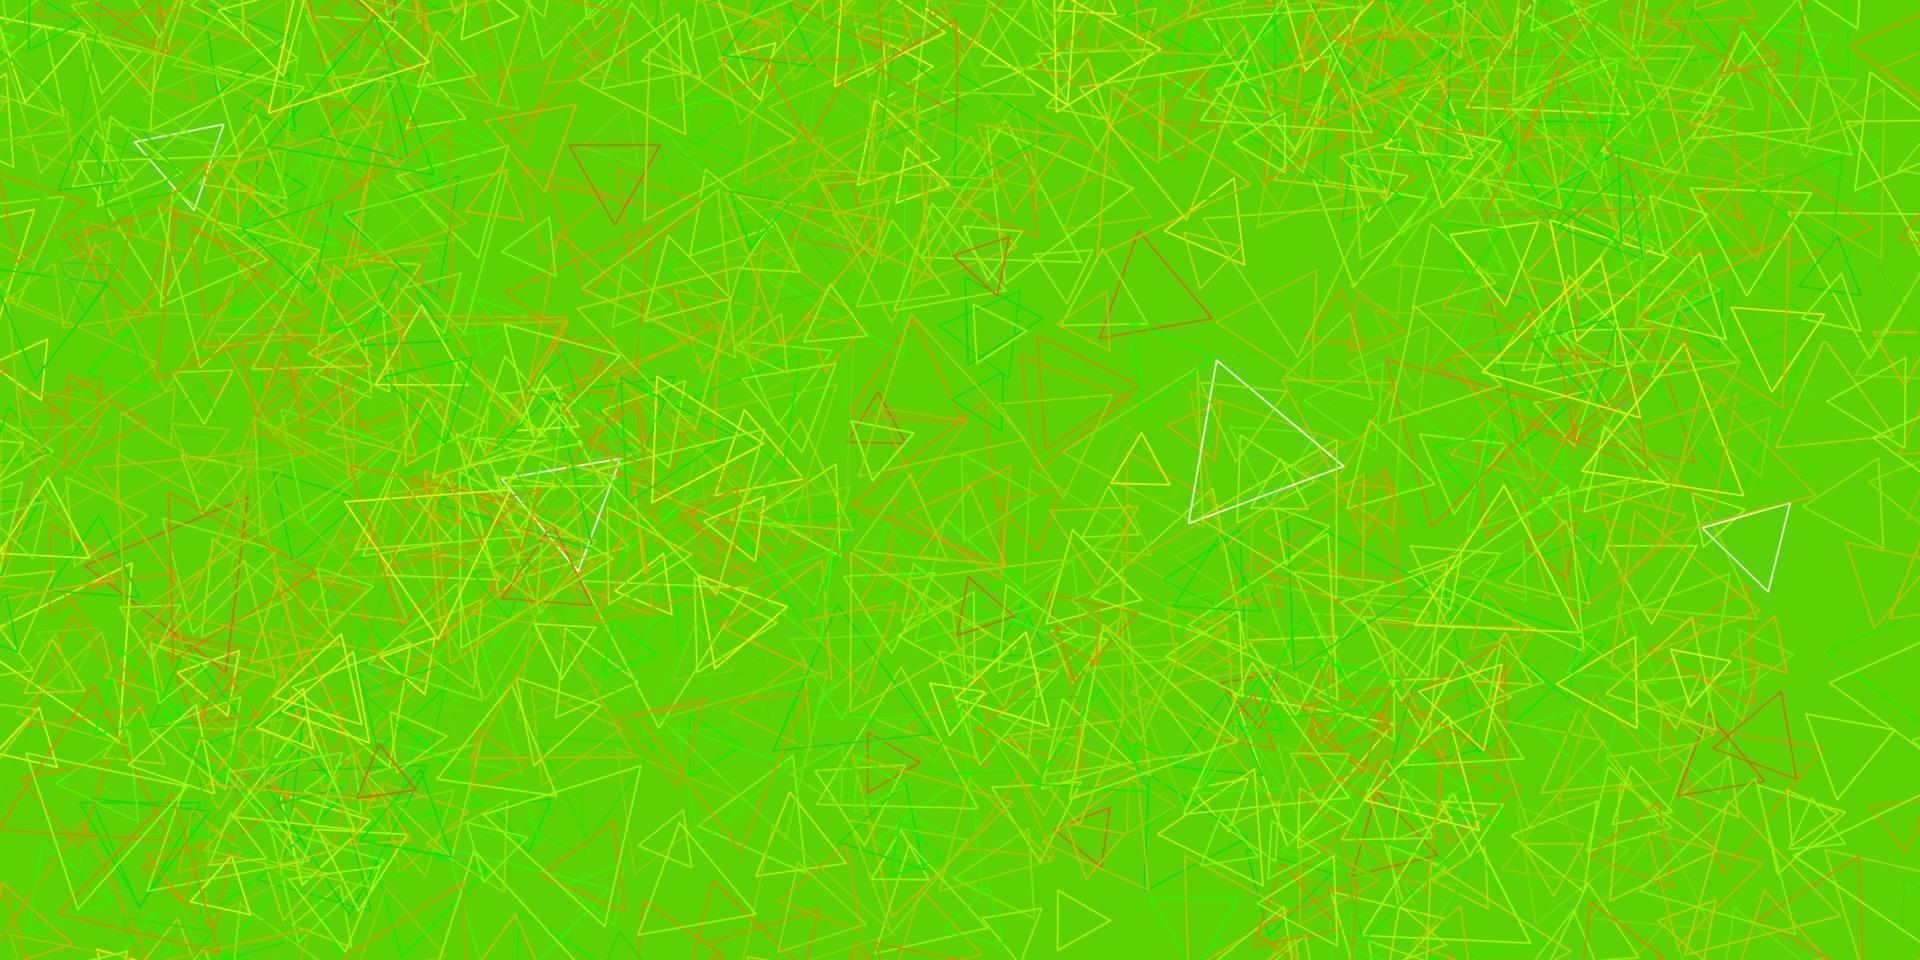 mörkgrön, gul vektorbakgrund med trianglar. vektor